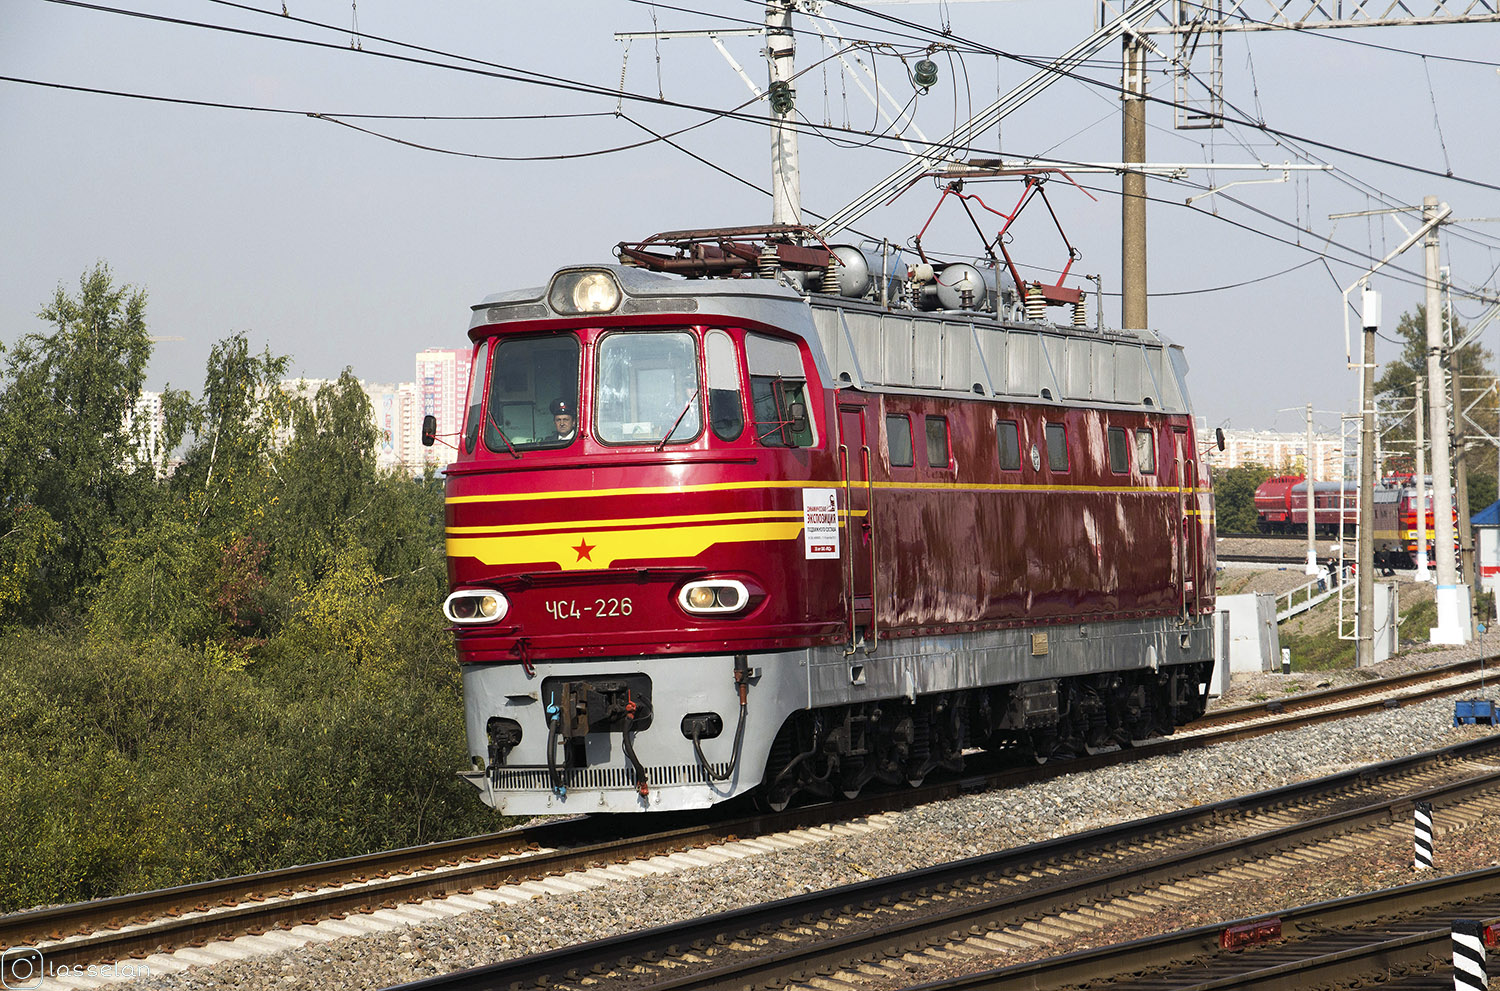 ЧС4-226; Московская железная дорога — IV Международный железнодорожный салон "ЭКСПО 1520" 2013